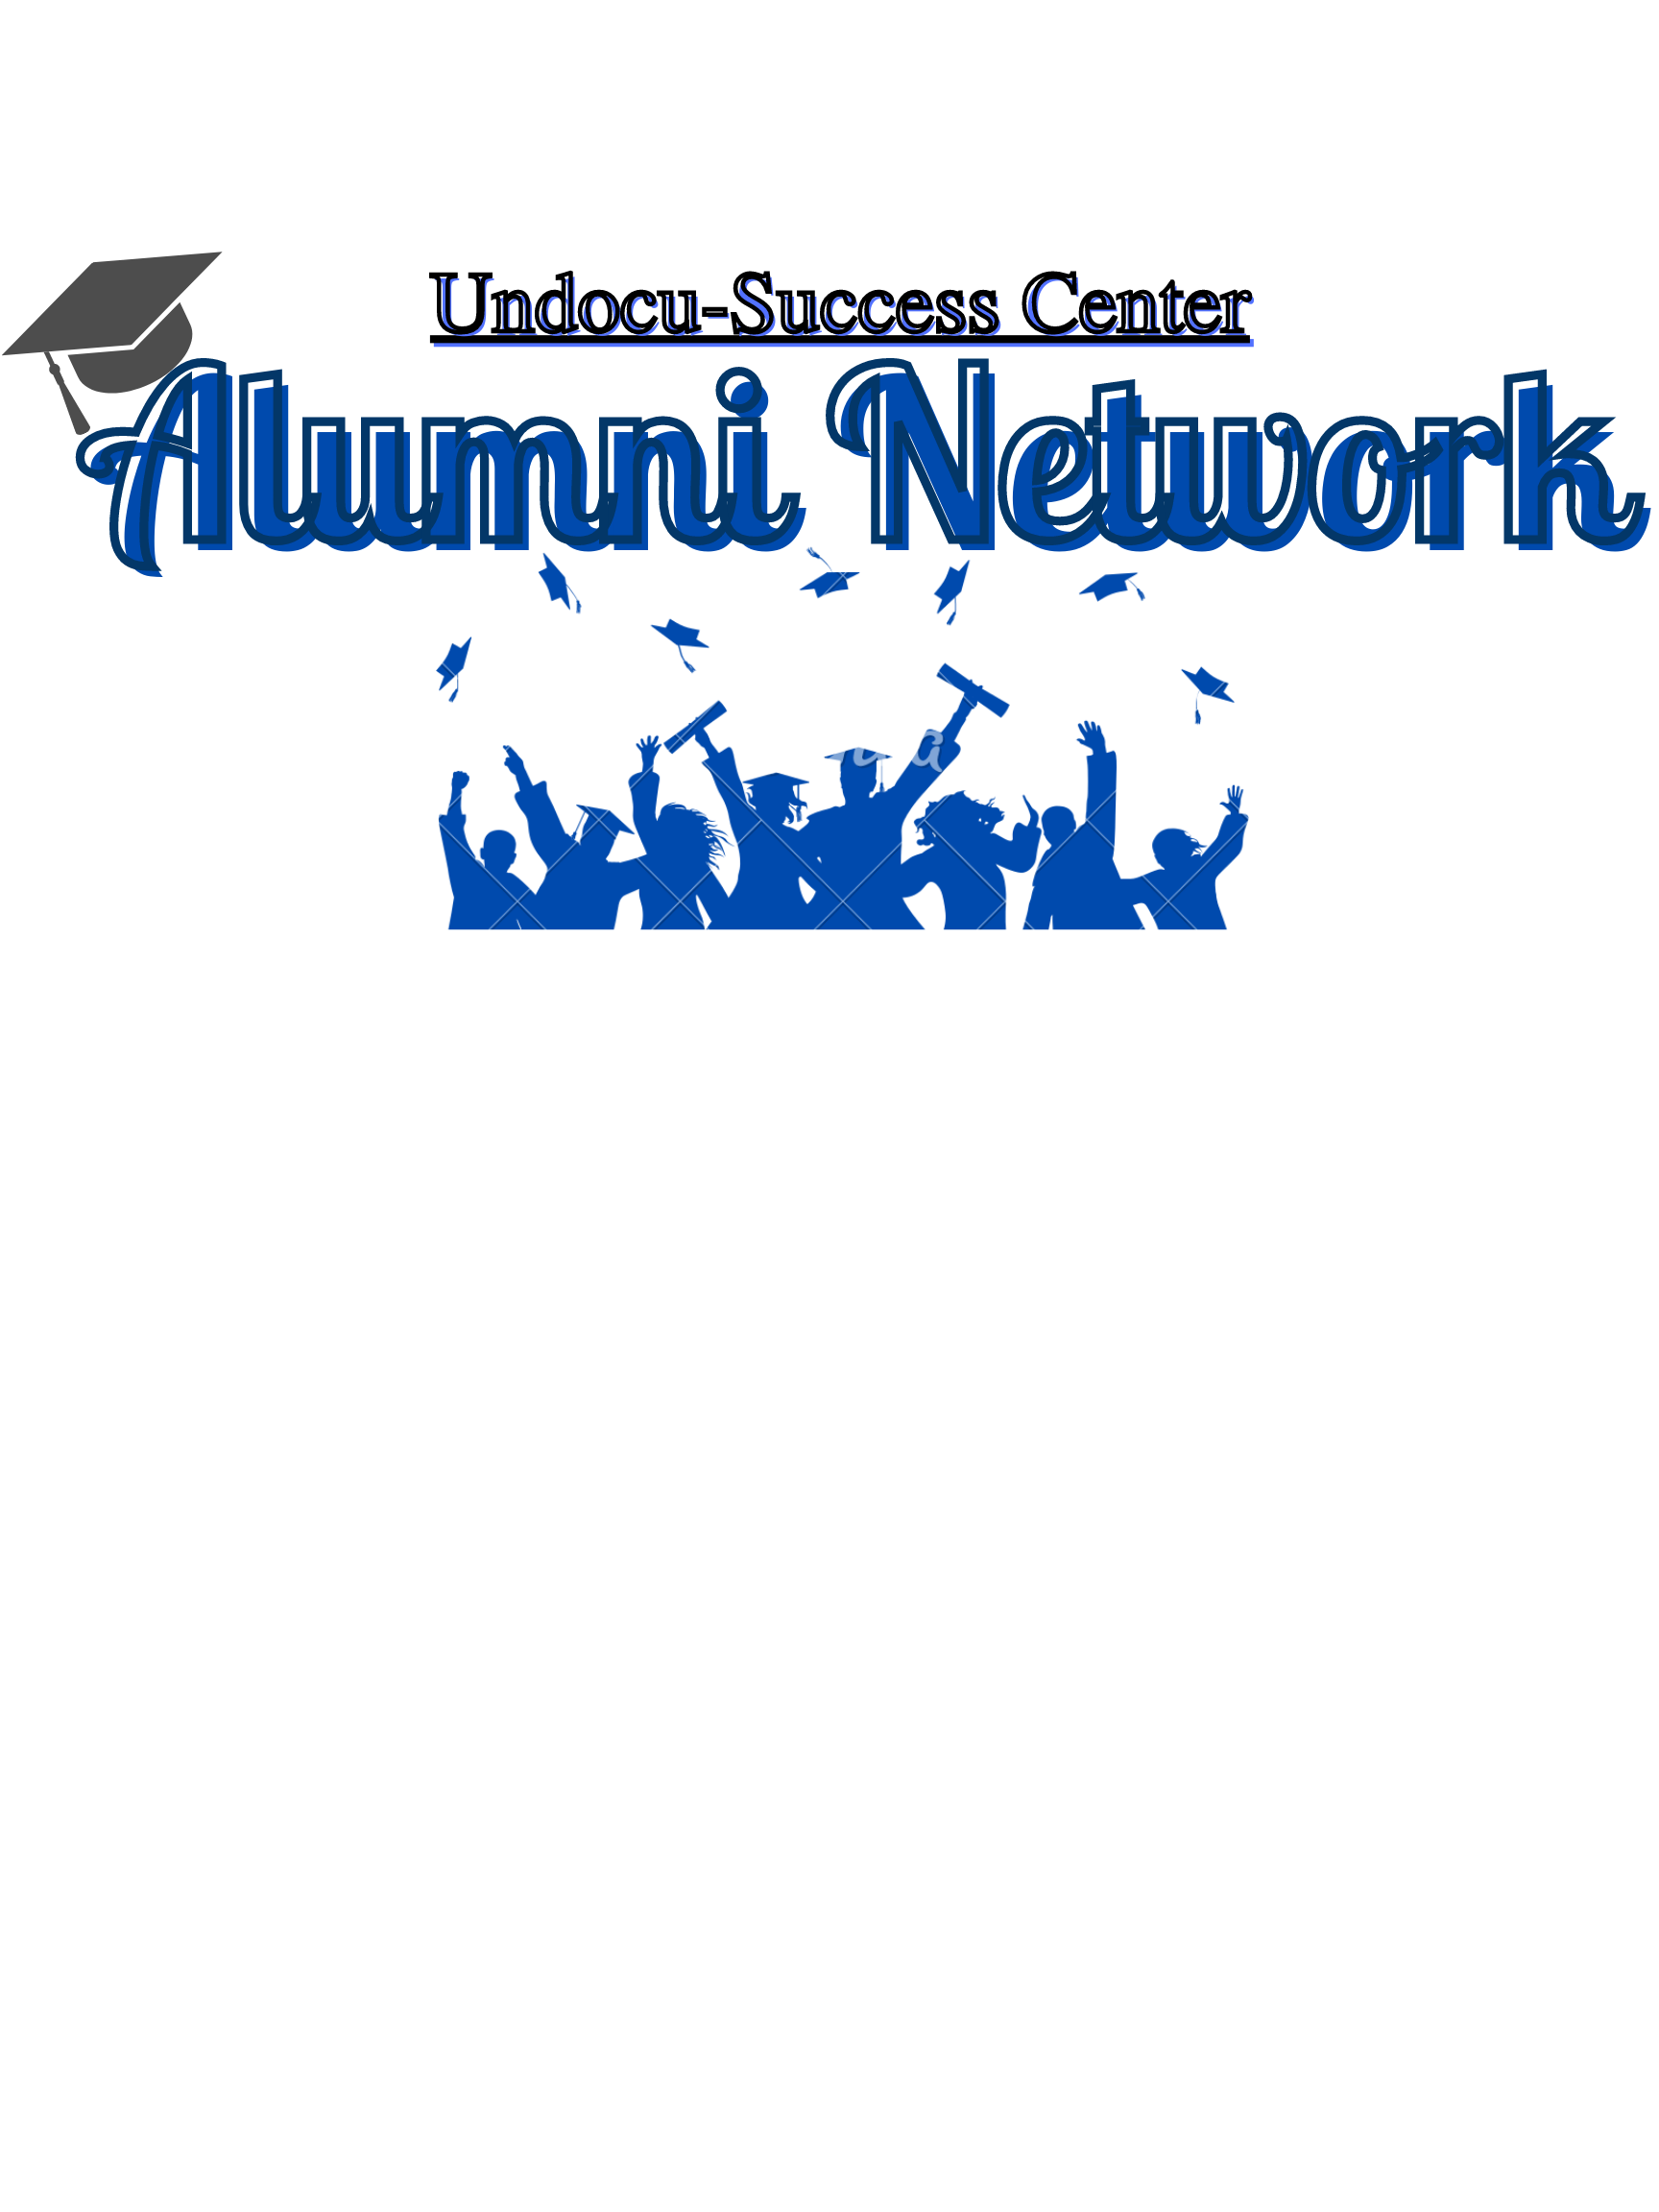 Undocu-Success Center Alumni Network